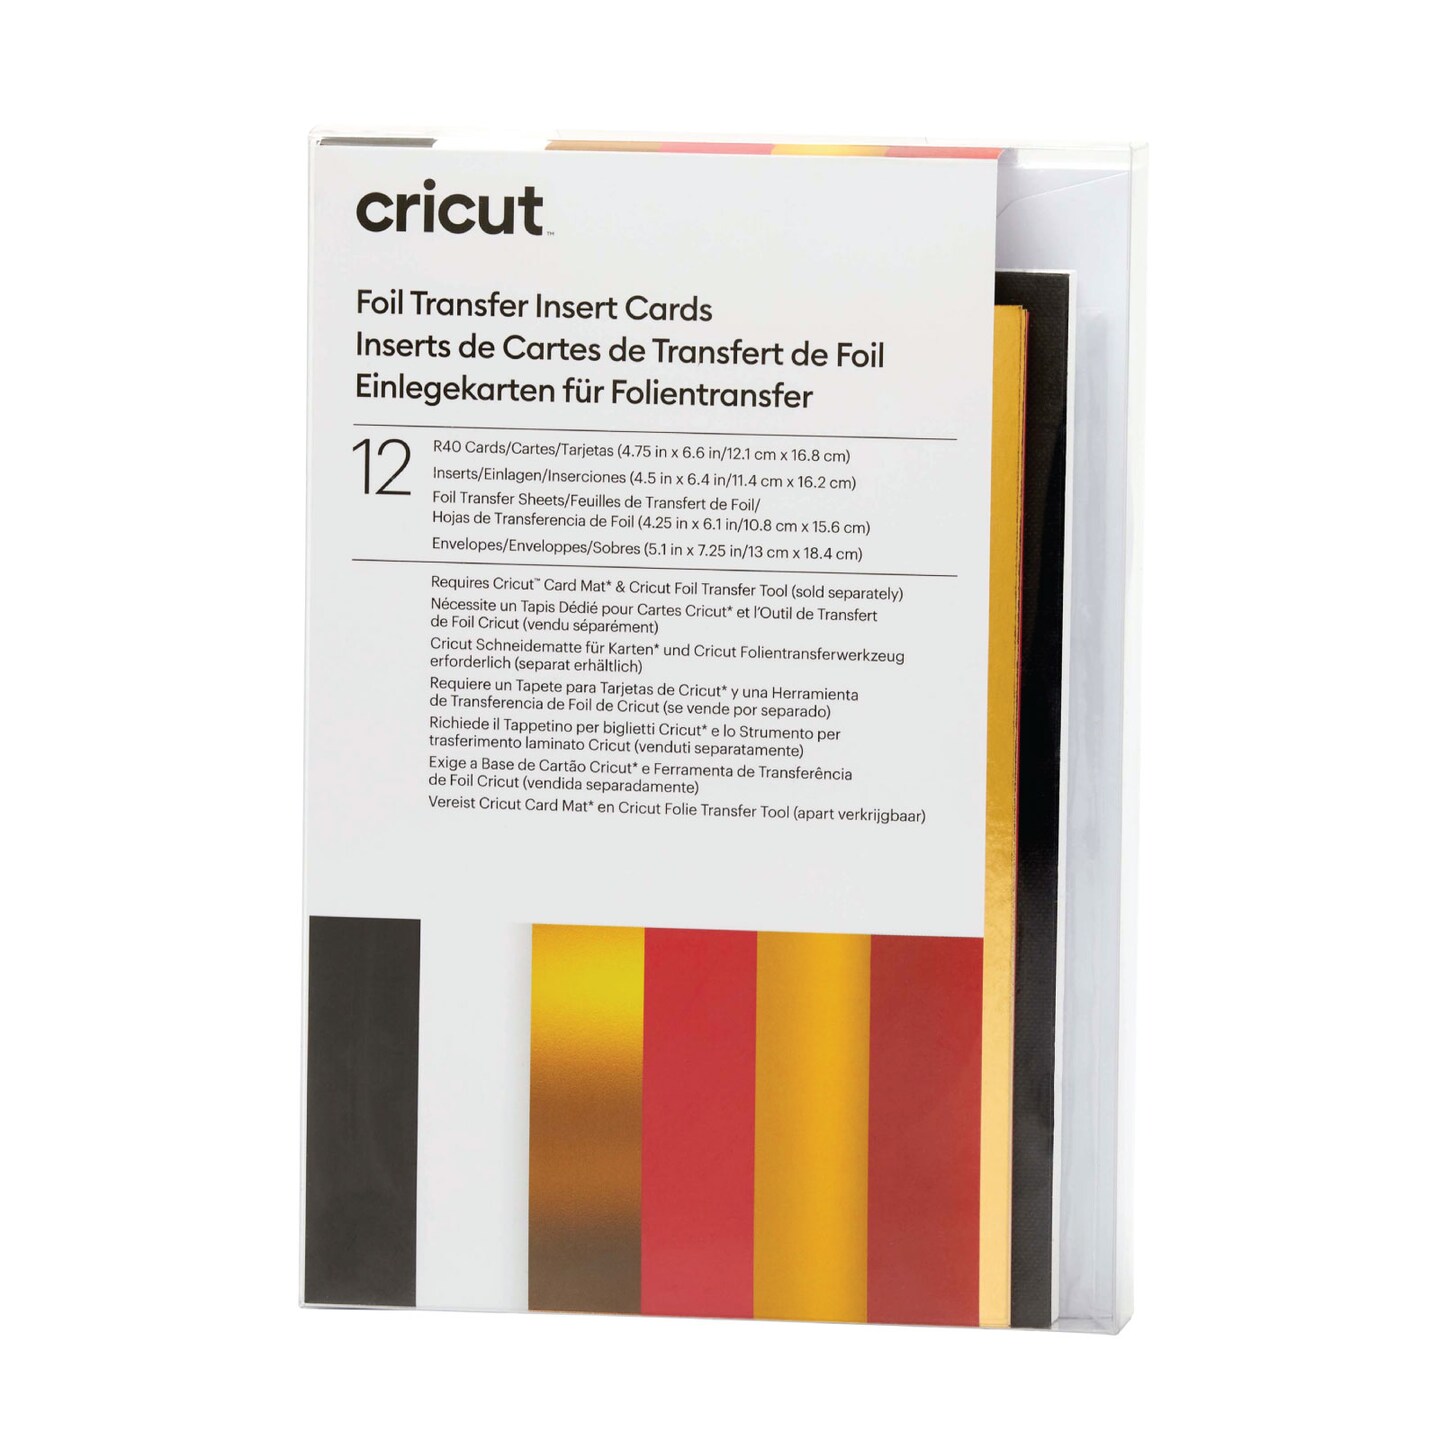 Cricut Foil Transfer Cards, R40 Royal Flush Sampler 12 Count